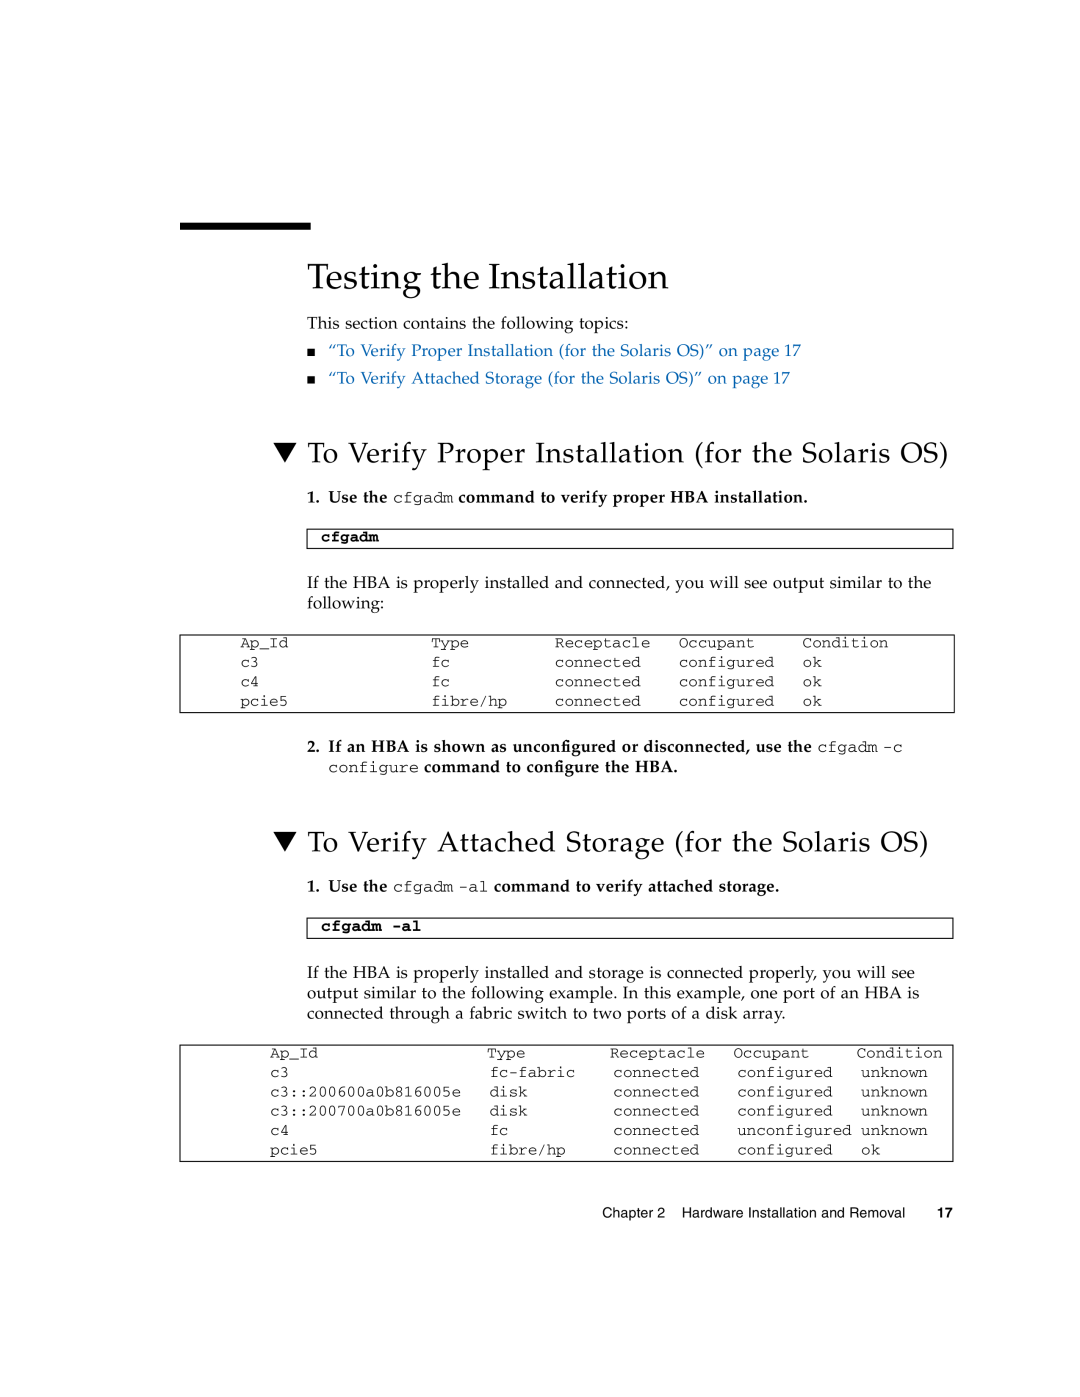 Sun Microsystems SG-XPCIE2FCGBE-E-Z Testing the Installation, To Verify Proper Installation for the Solaris OS, cfgadm -al 